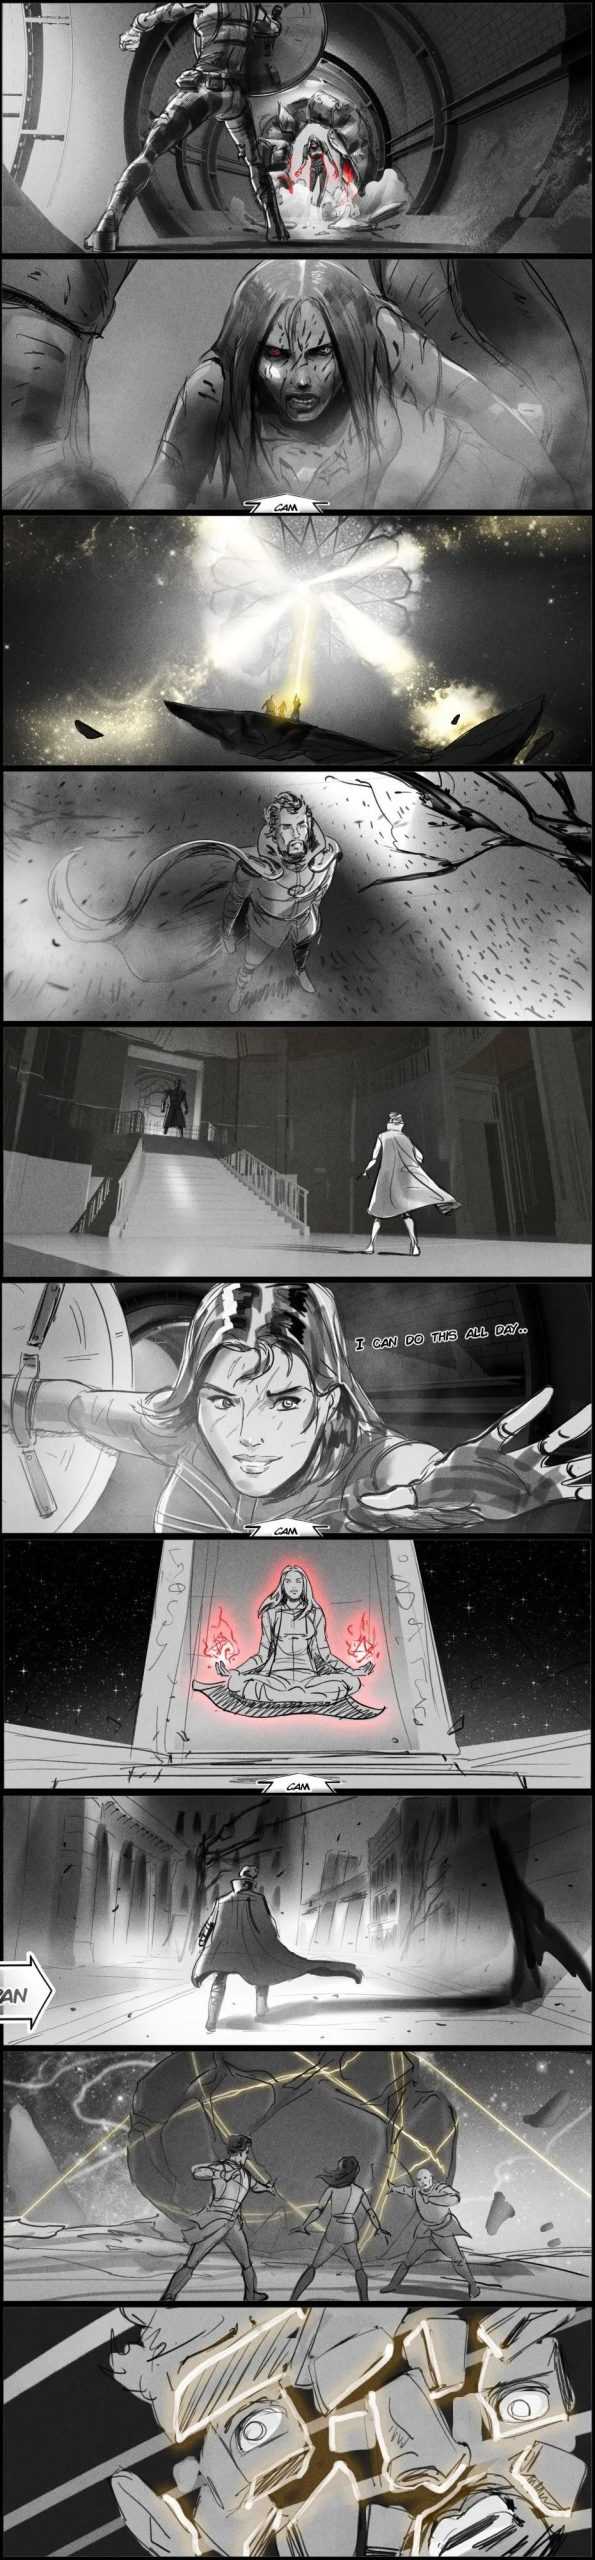 漫威电影《奇异博士2》原先的故事设定，原本有钢铁侠的-插图4